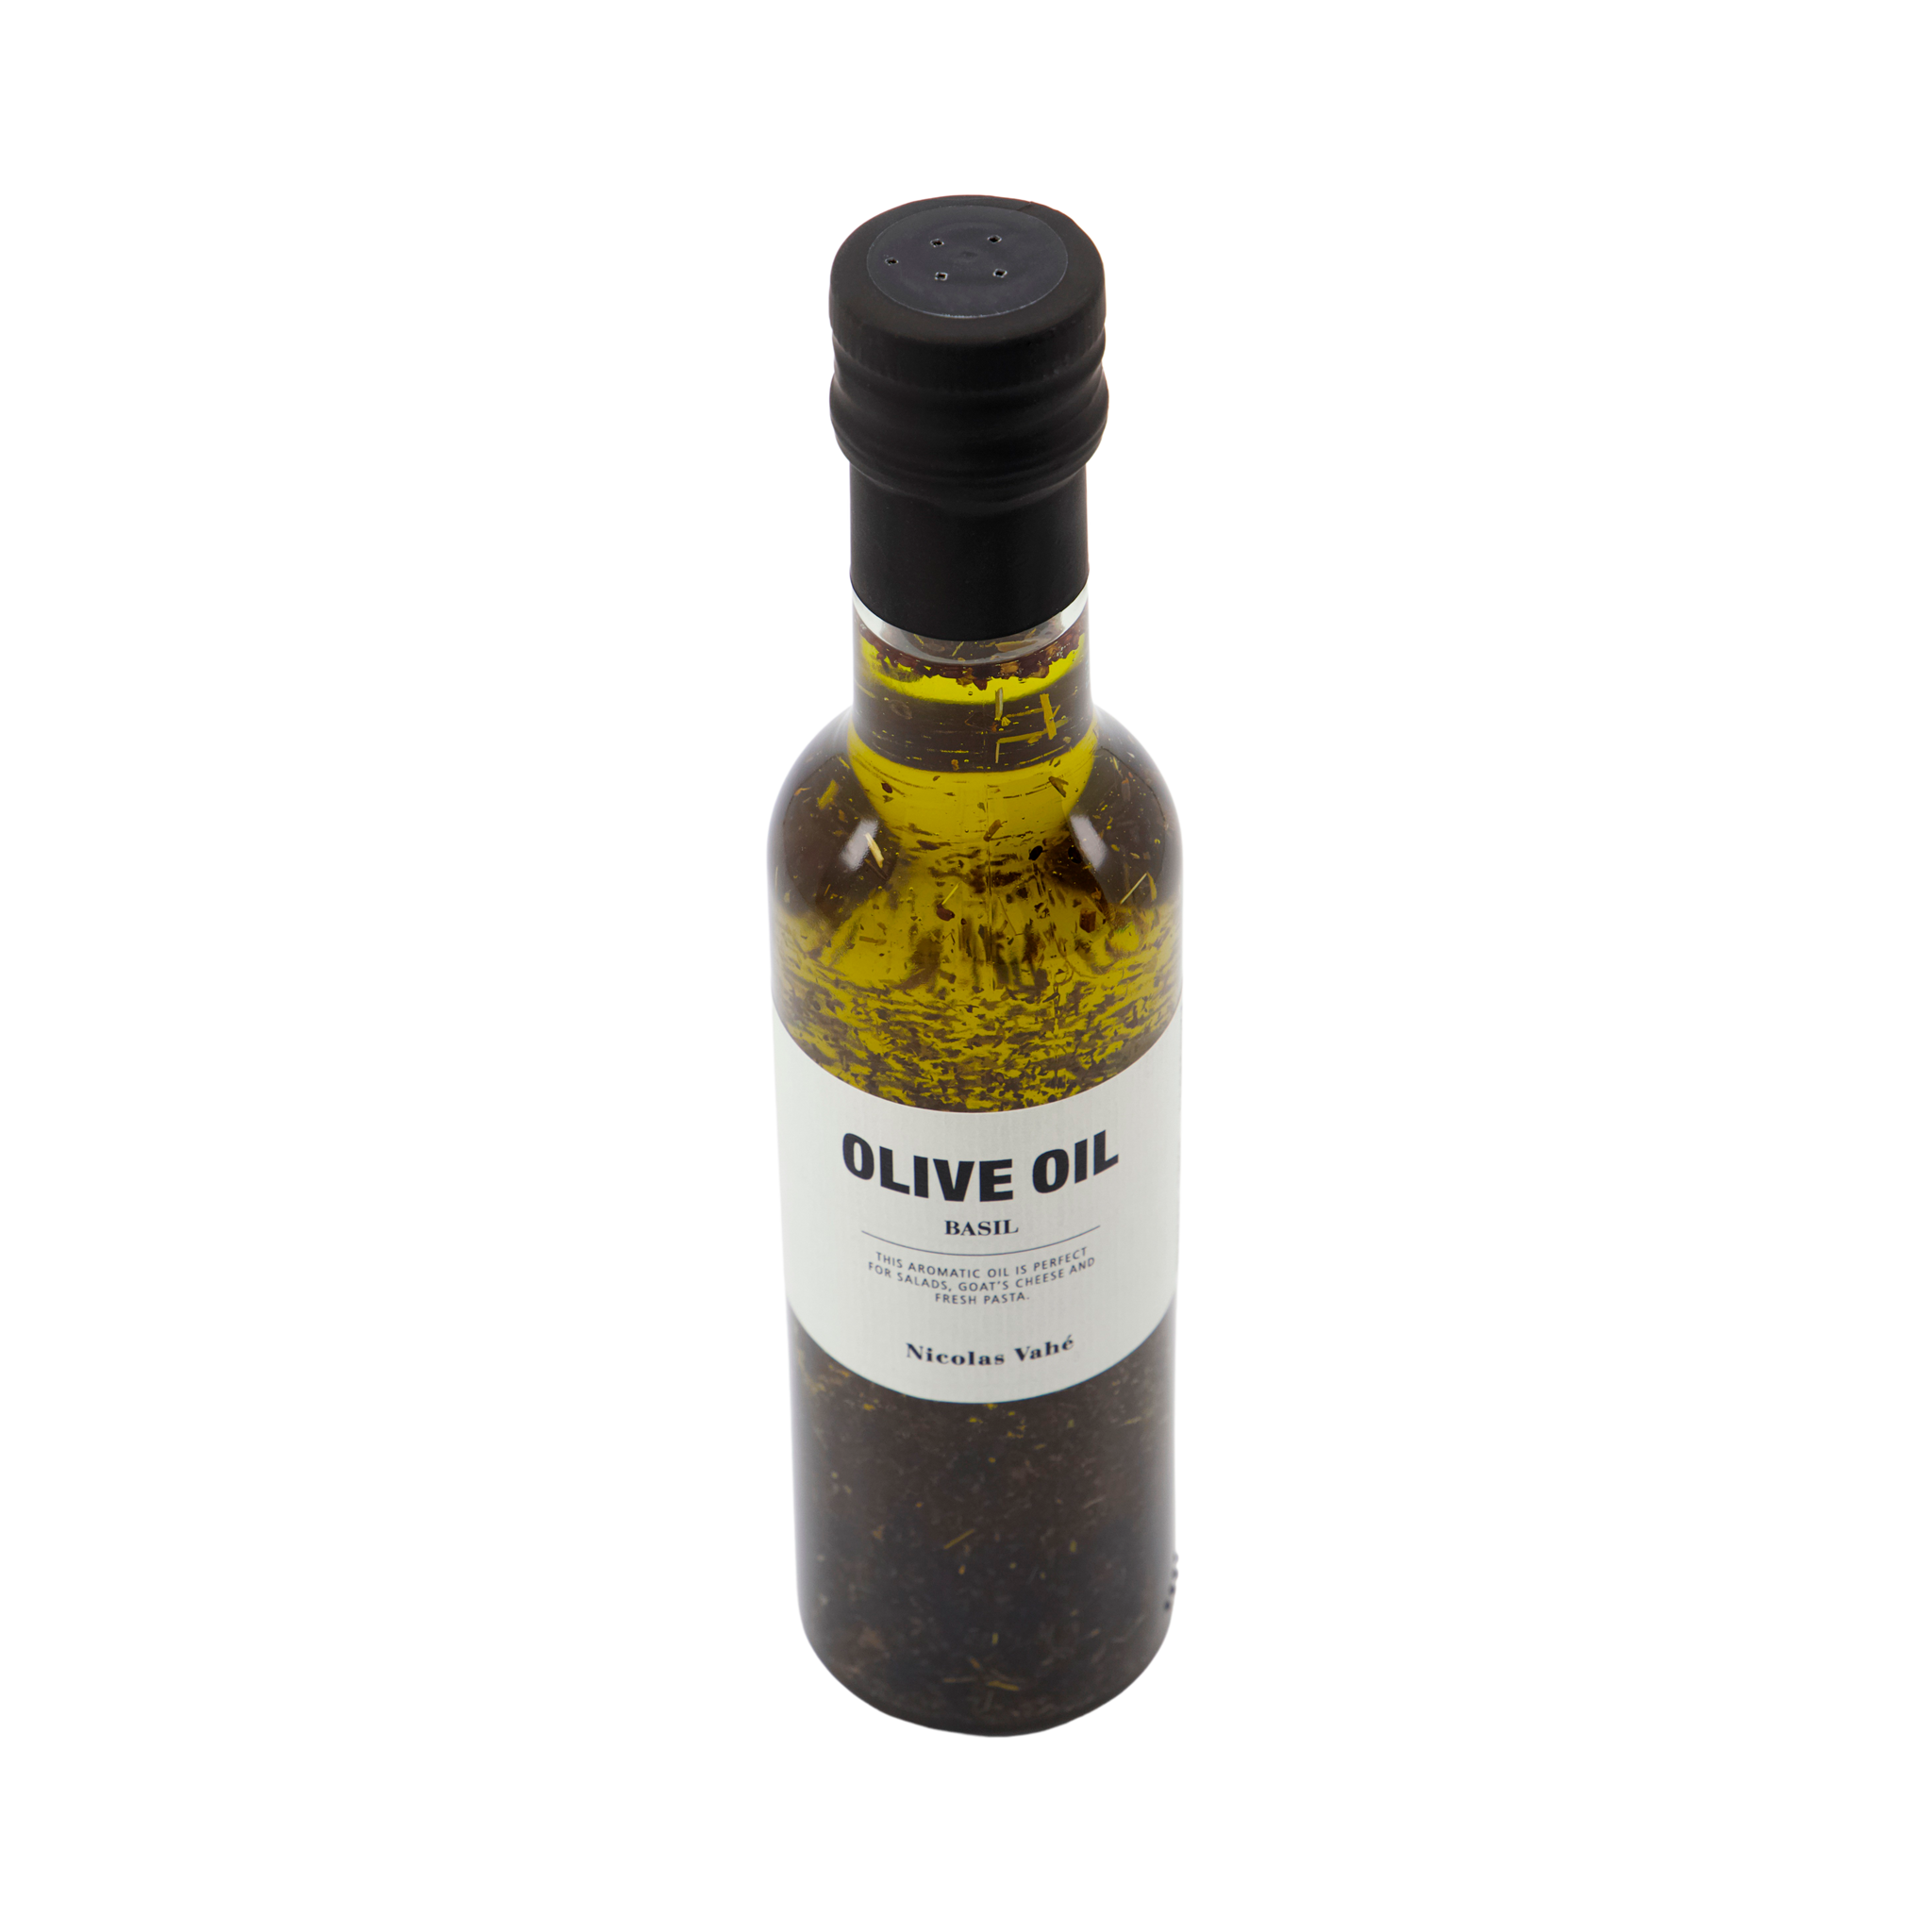 83876 Nicolas Vahé NV Olive Oil - Basil